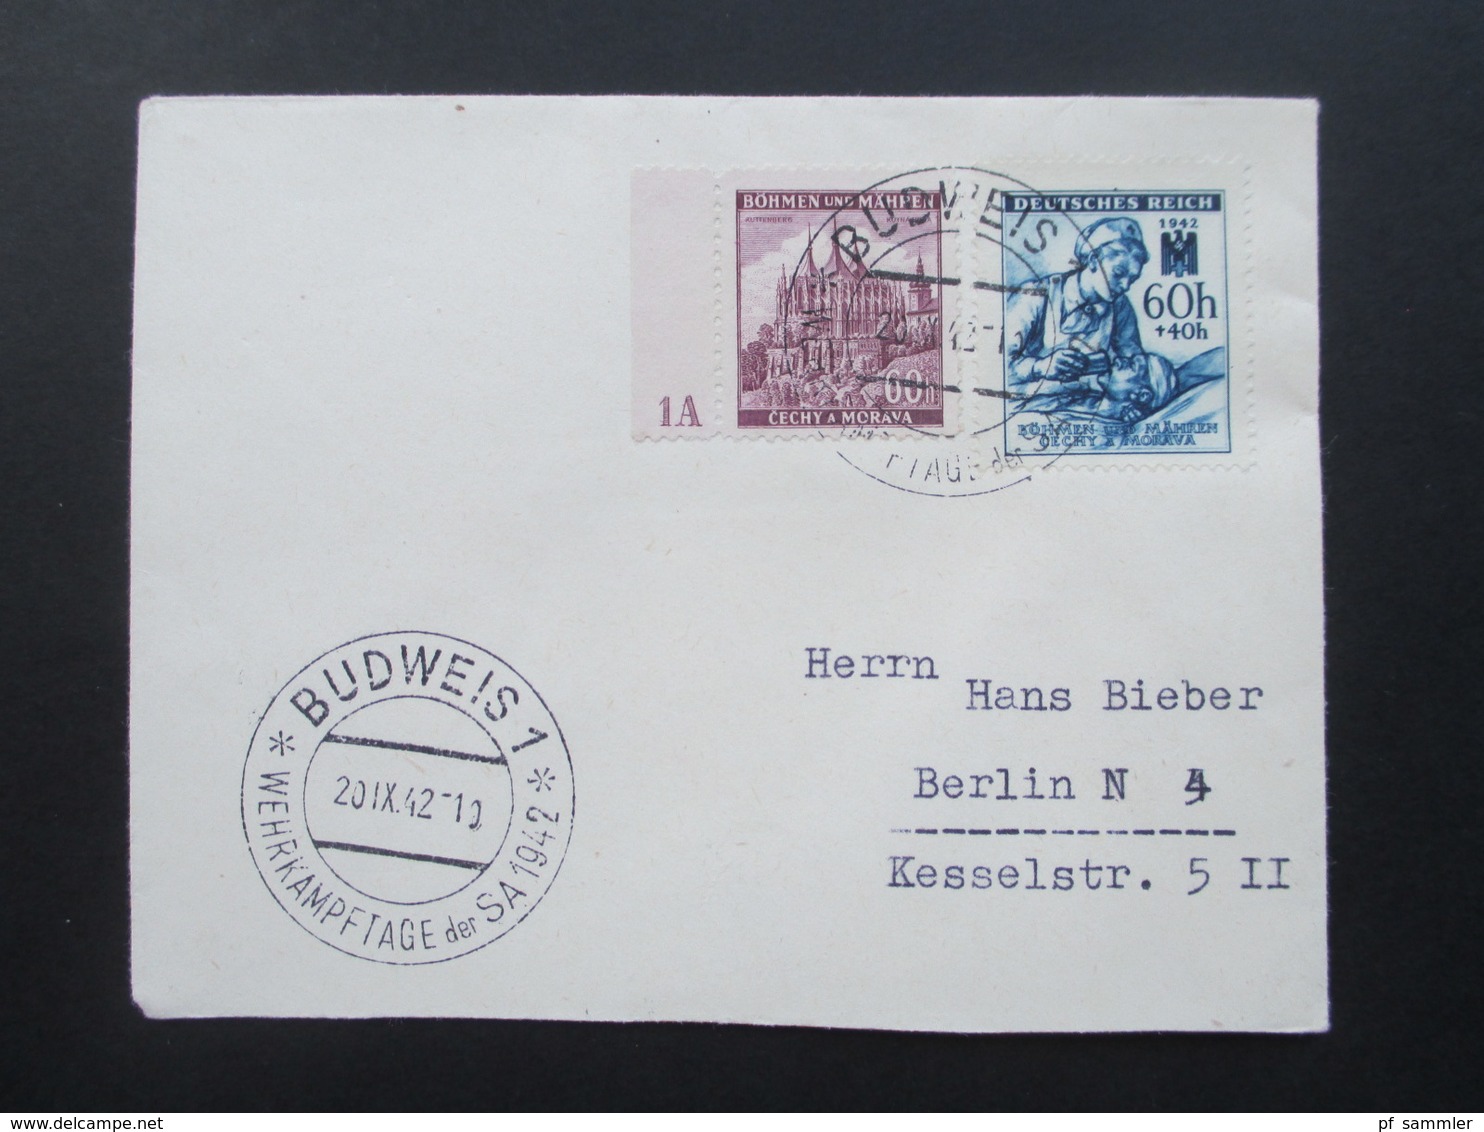 Böhmen Und Mähren MiF Nr. 27 Mit Plattennummer 1A SST Budweis 1 Wehrkampftage Der SA 1942 - Covers & Documents